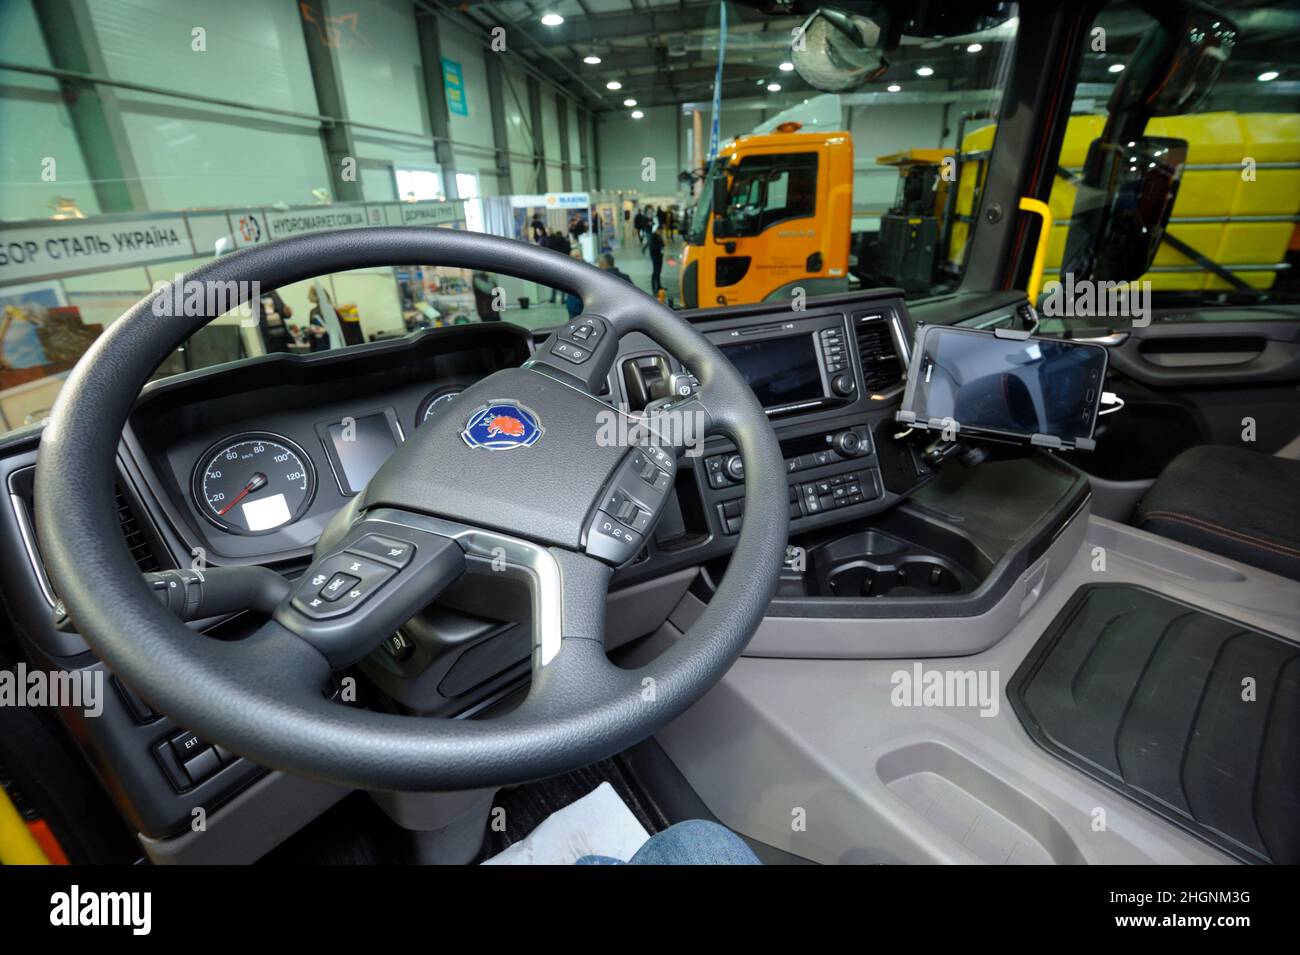 Intérieur d'un nouveau modèle de camion à benne Scania cabine: Siège, roue, tableau de bord. Exposition Heavy Duty 2019. 20 mars 2019. Berezovka, Ukraine Banque D'Images